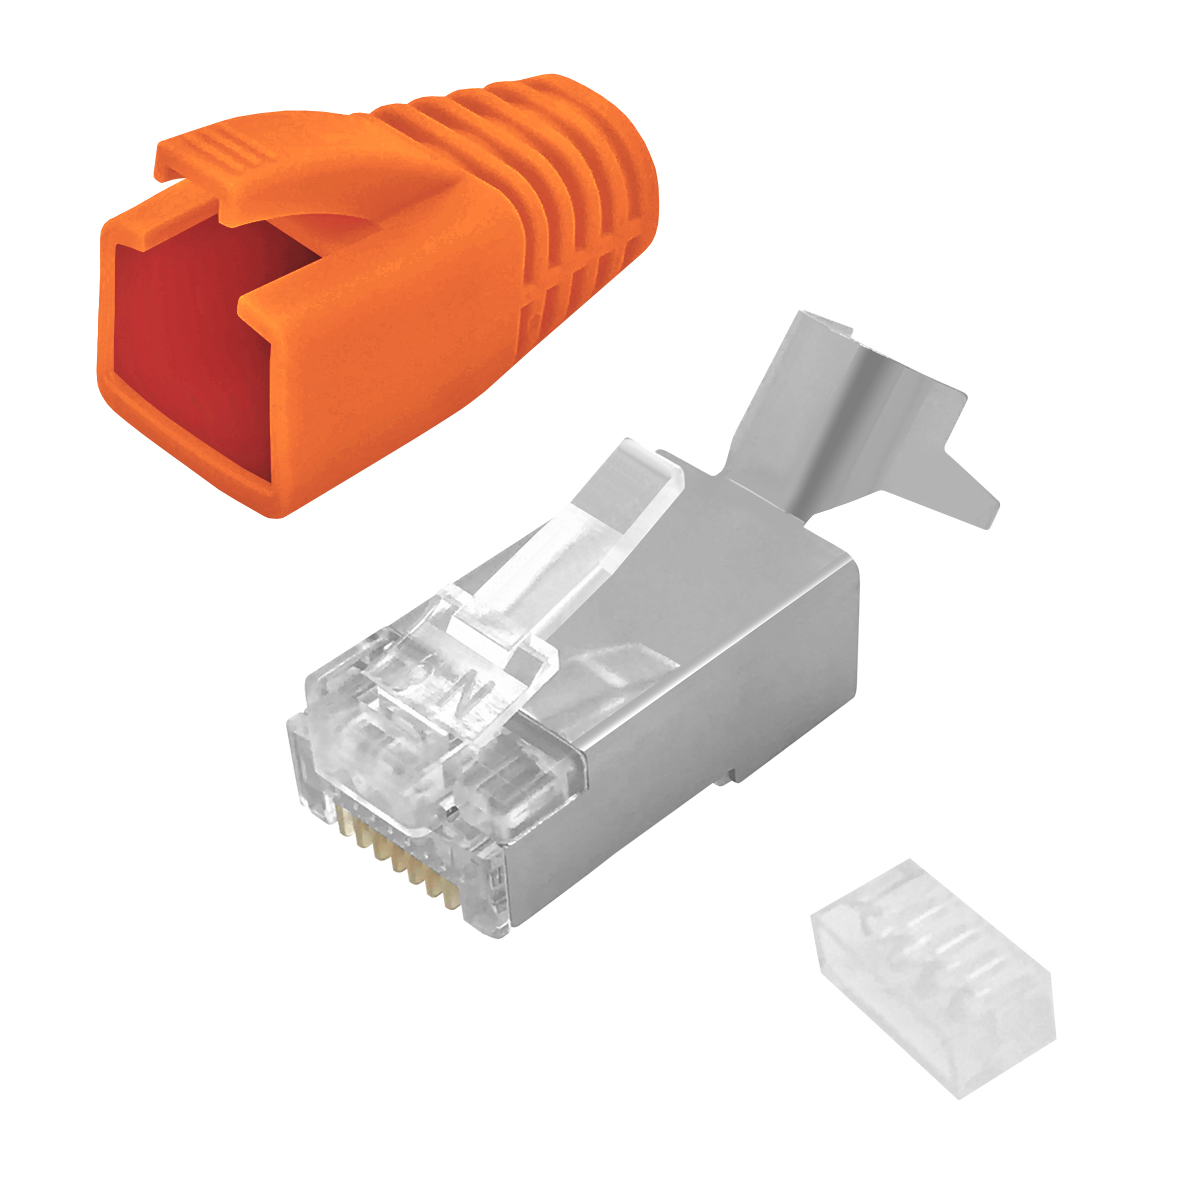 ARLI 10x Netzwerkstecker Stecker, Cat7 Orange